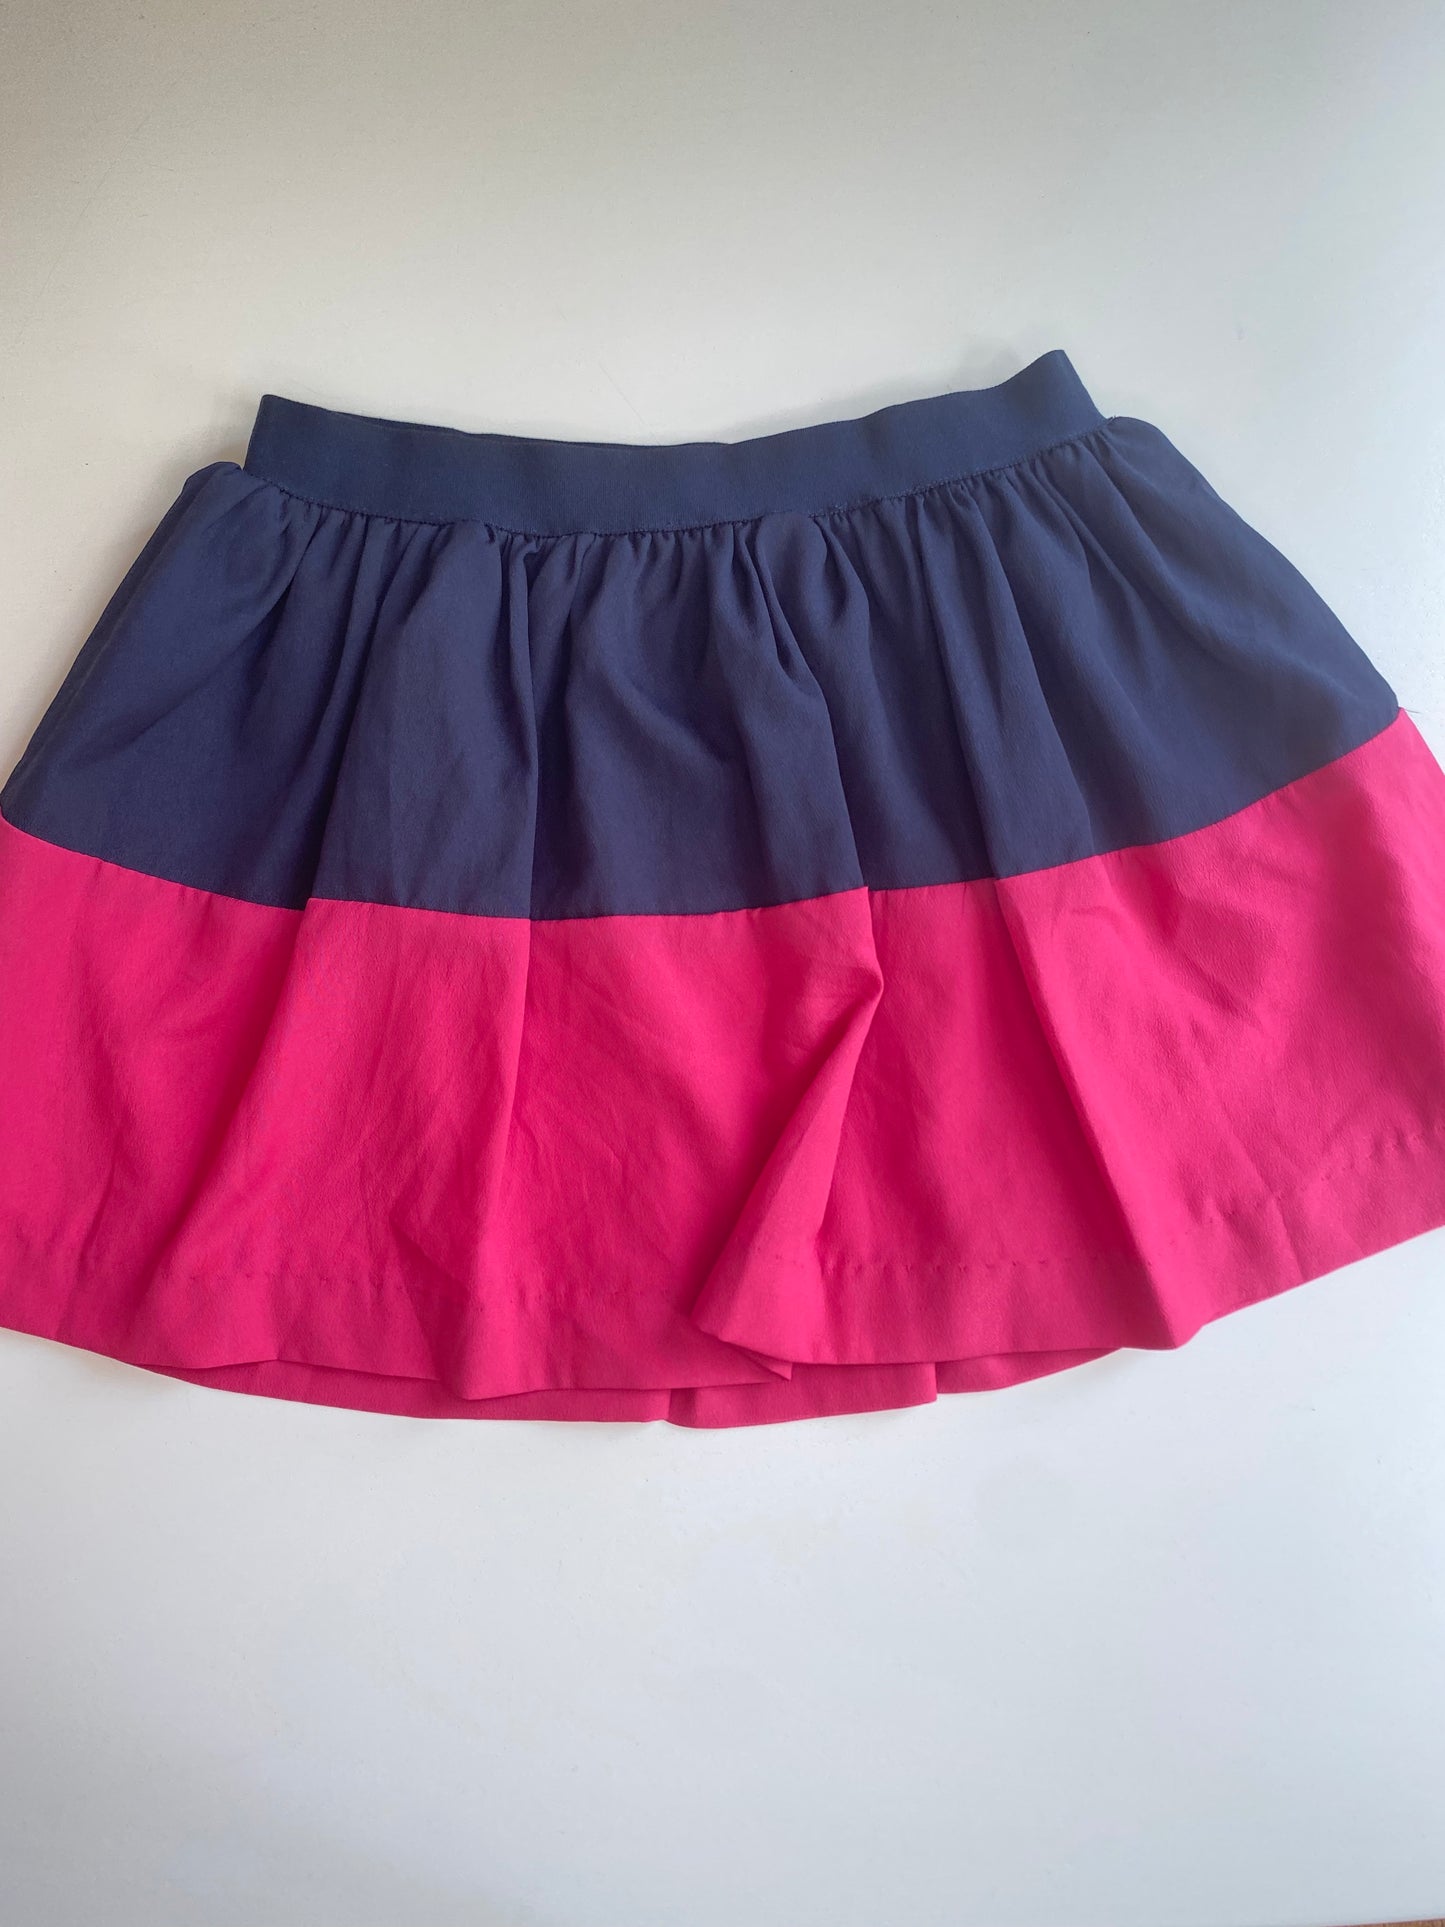 RALPH LAUREN skirt / 5y